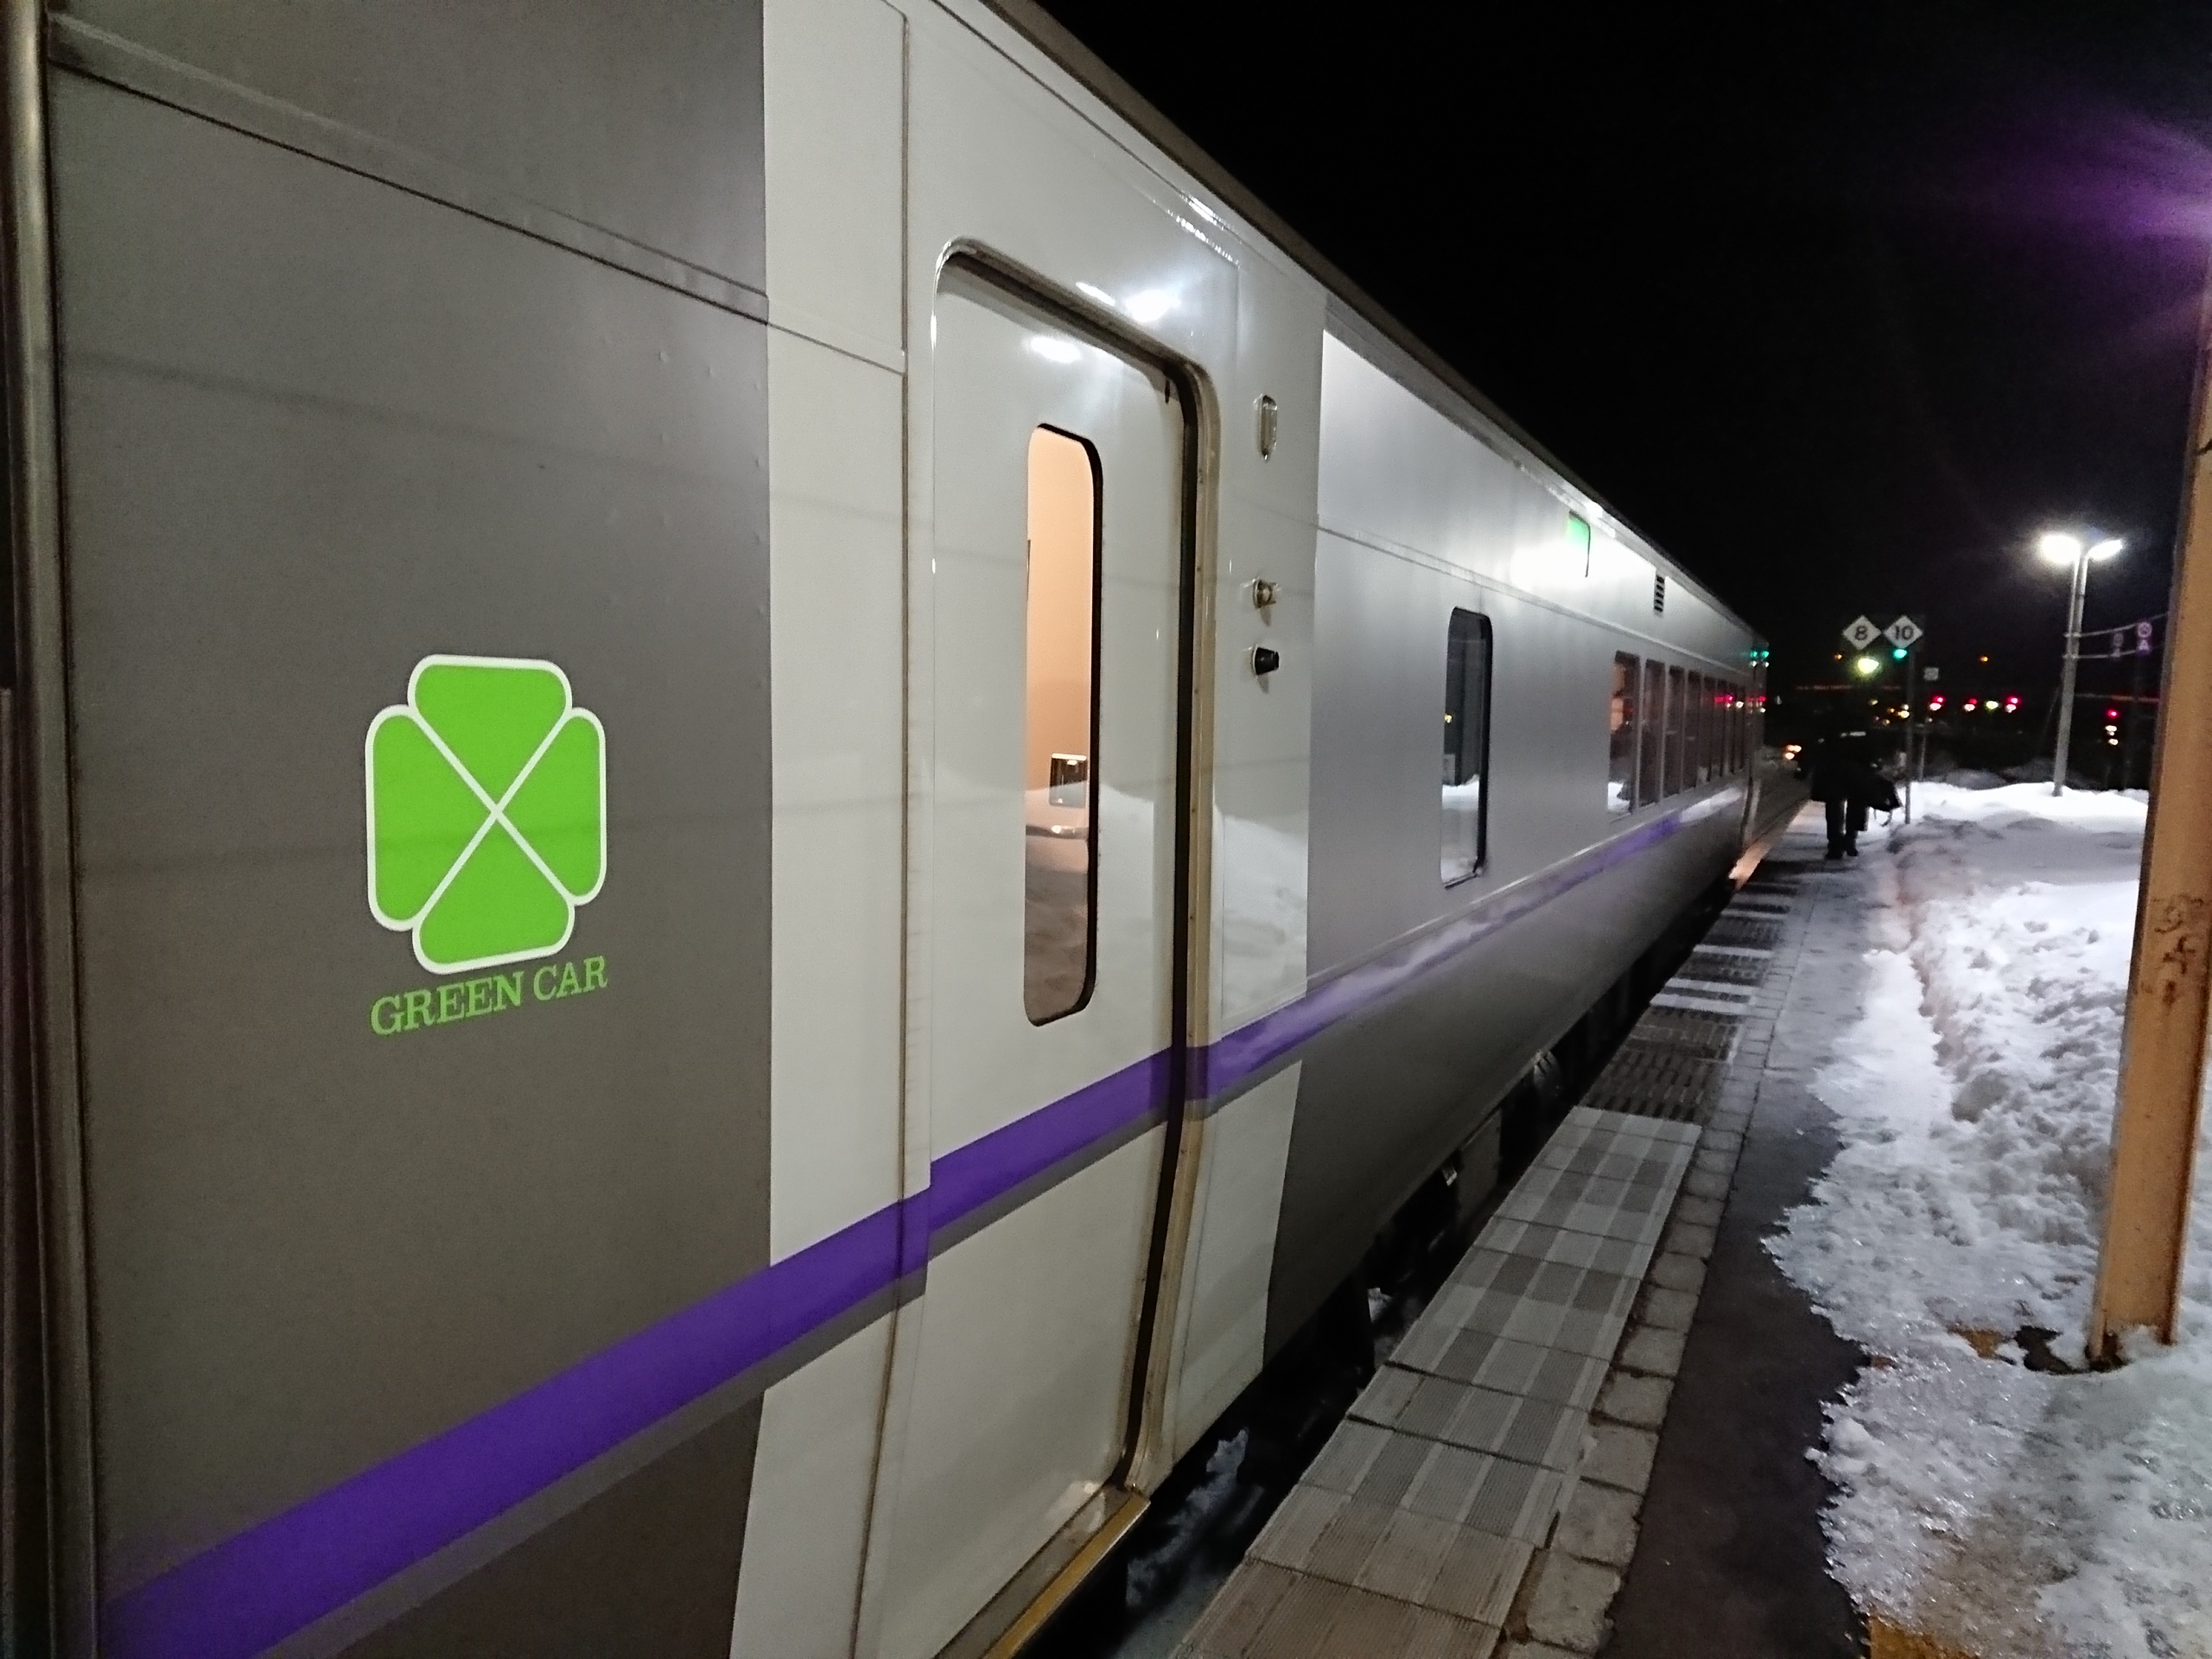 阪和線の沿線から スーパー北斗 北海道新幹線 はやて E5系 グリーン車を乗り比べてみる 19 1 30